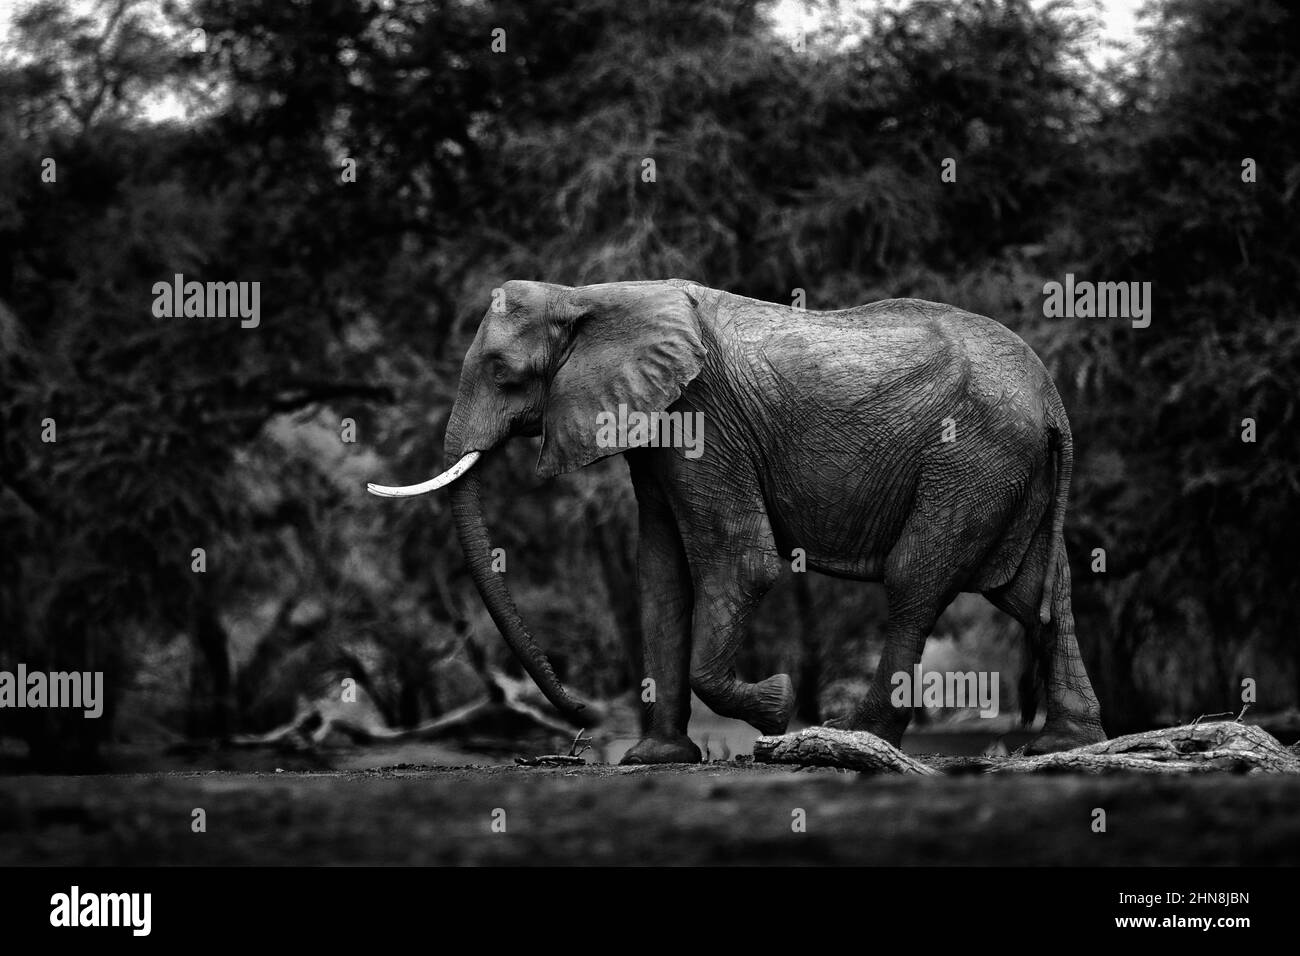 Vista de arte en blanco y negro en la naturaleza. Elefante en el Parque Nacional de Piscinas de Mana, Zimbabwe en África. Gran animal en el bosque antiguo. Escena mágica de la vida silvestre en la naturaleza. África Foto de stock